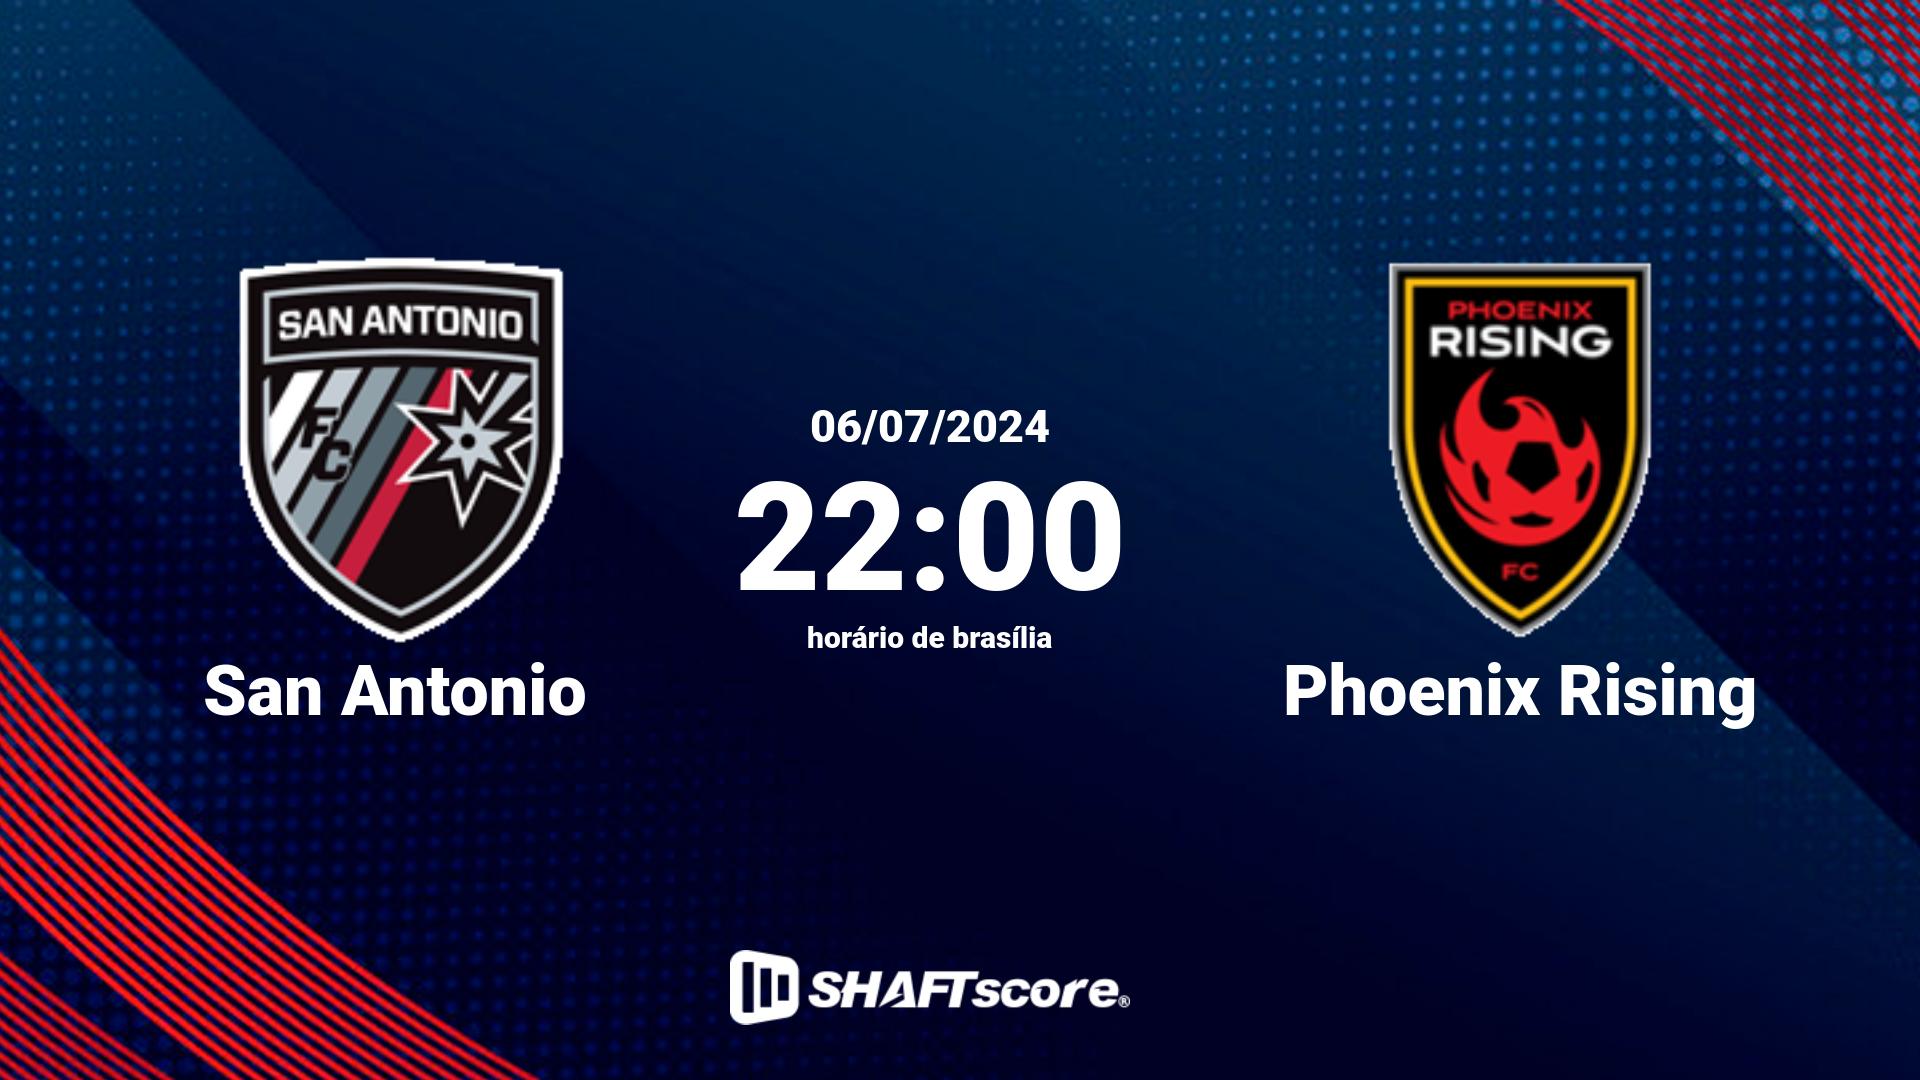 Estatísticas do jogo San Antonio vs Phoenix Rising 06.07 22:00